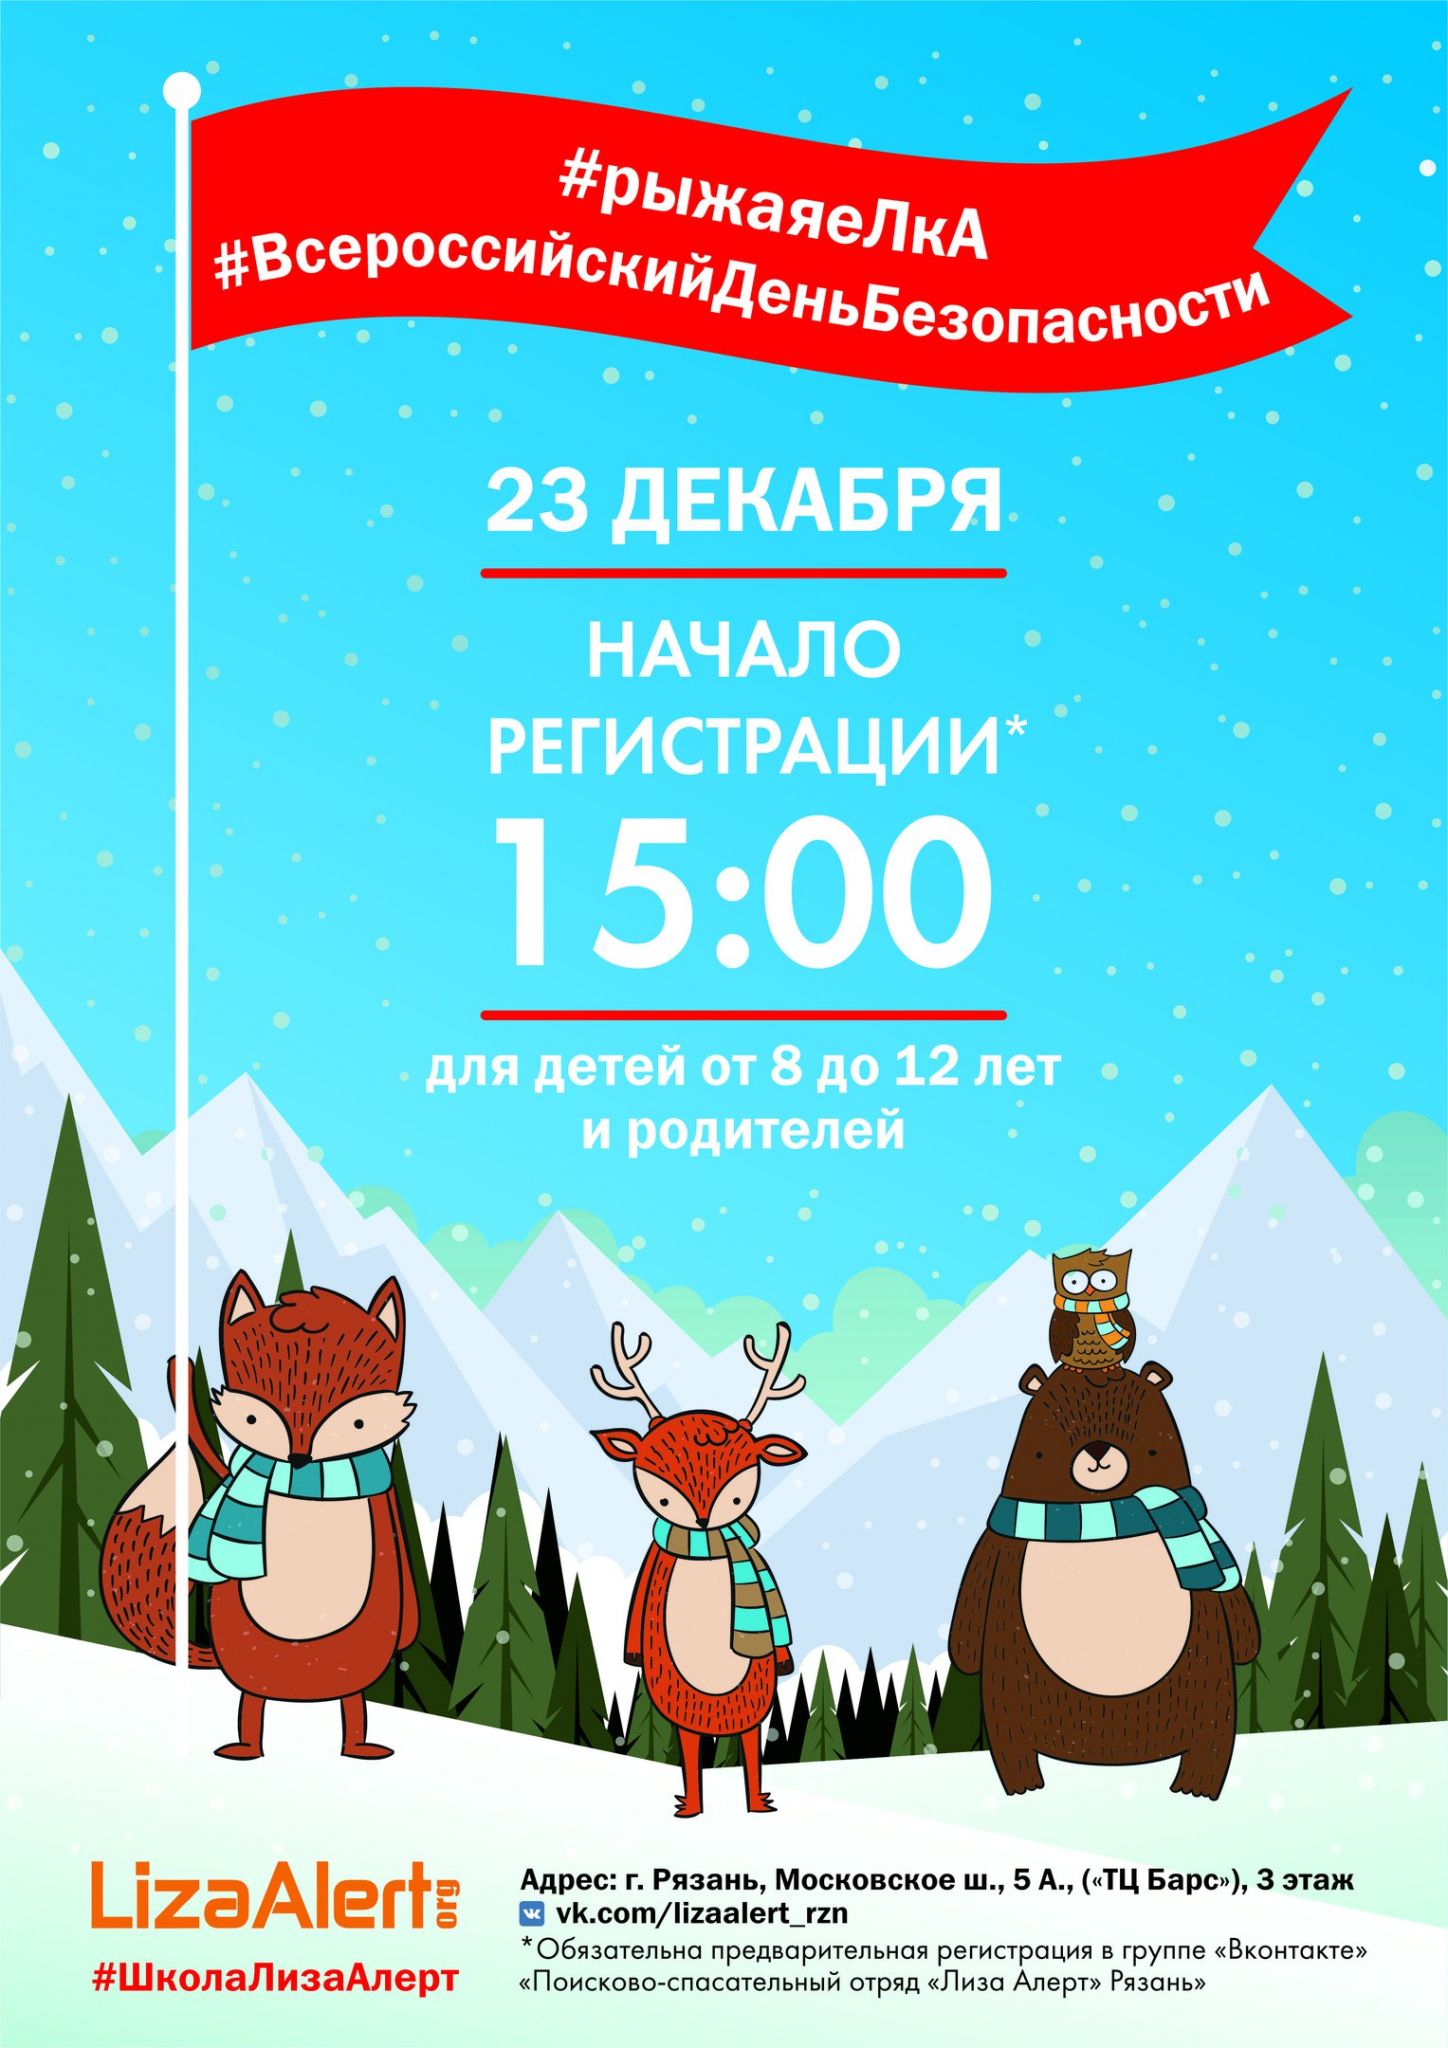 23 декабря в Рязани пройдет «Рыжая елка»